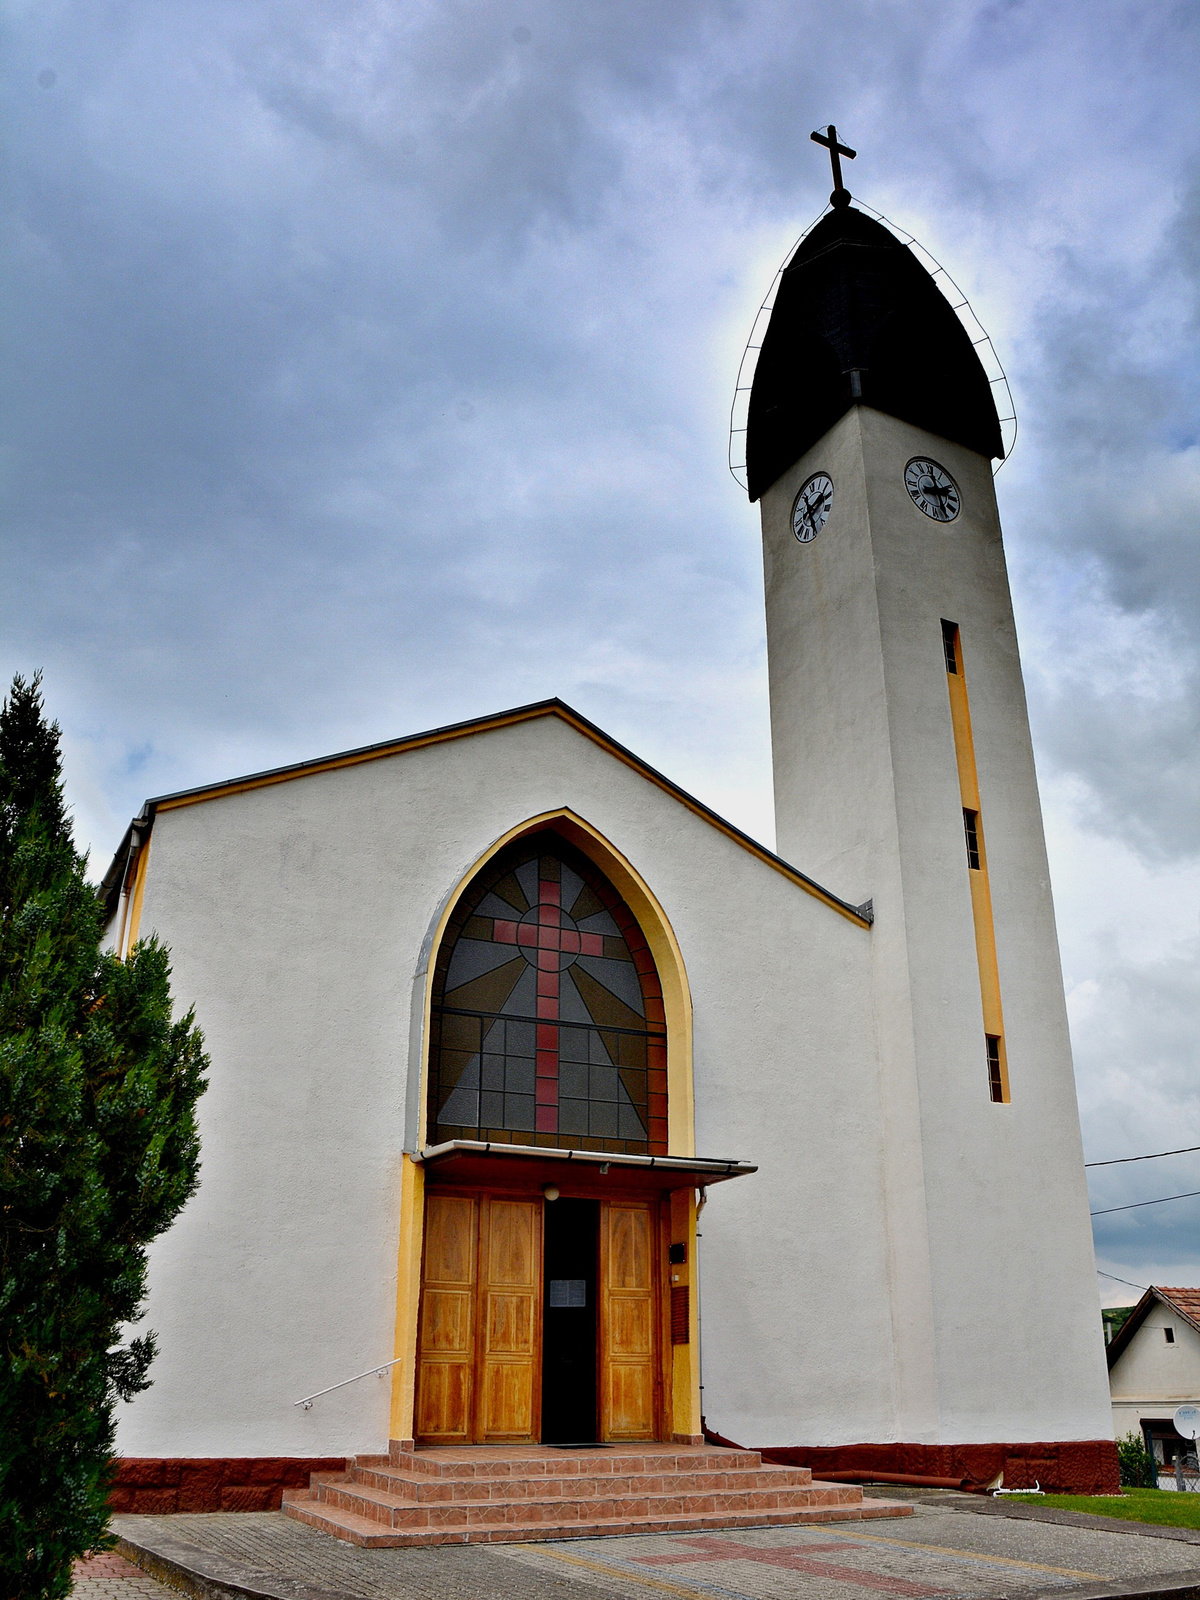 Avilai Szent Teréz katolikus templom, Kisbágyon